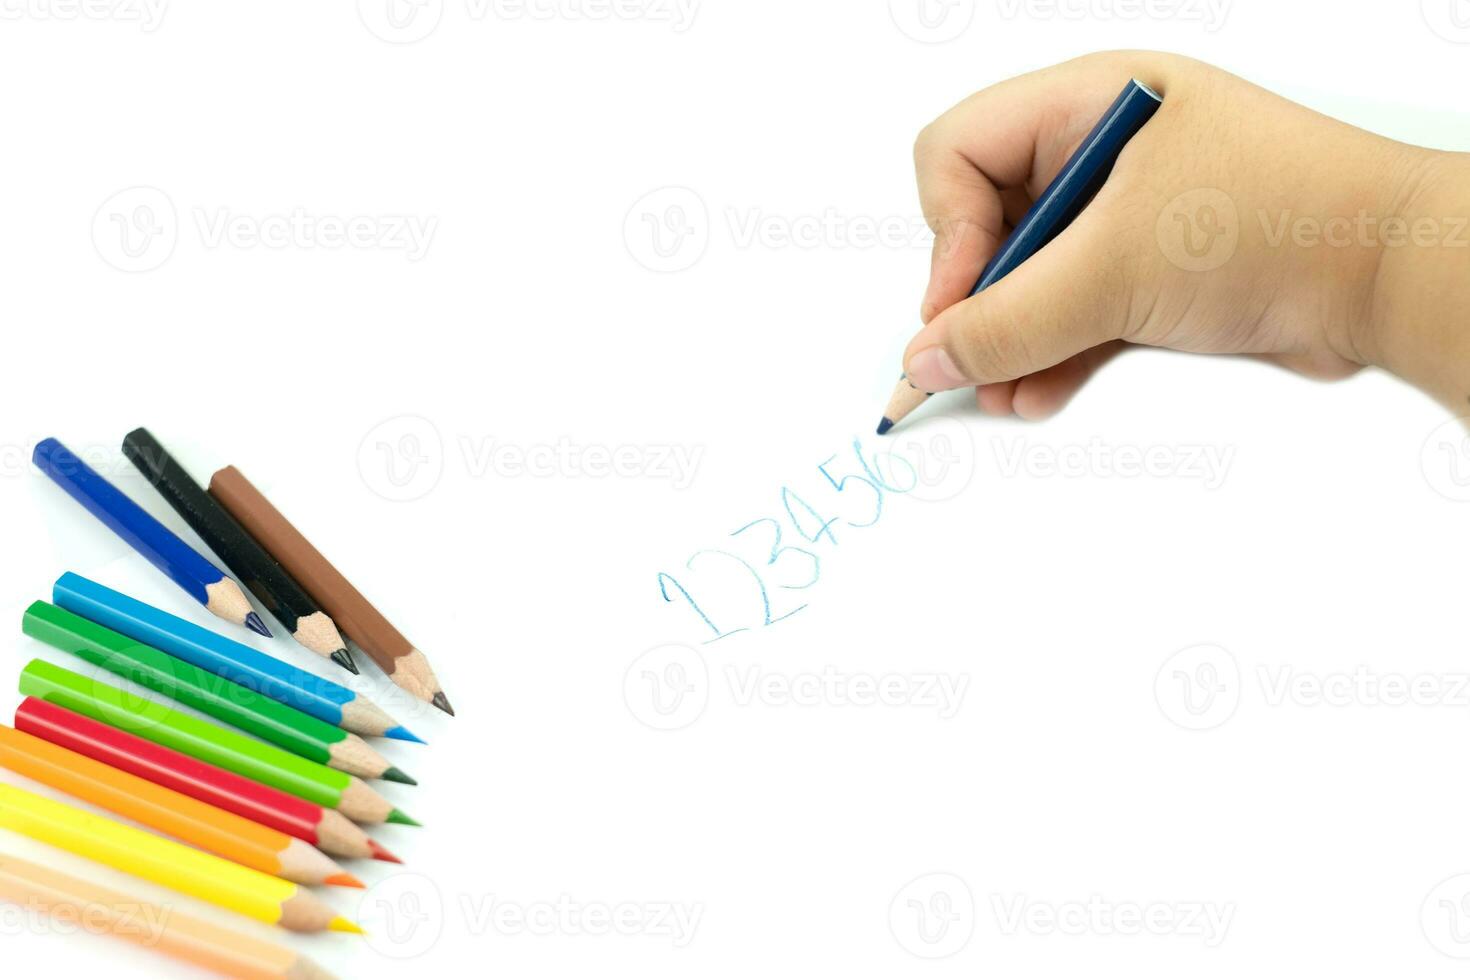 närbild på flickahand med penna som skriver engelska ord för hand foto